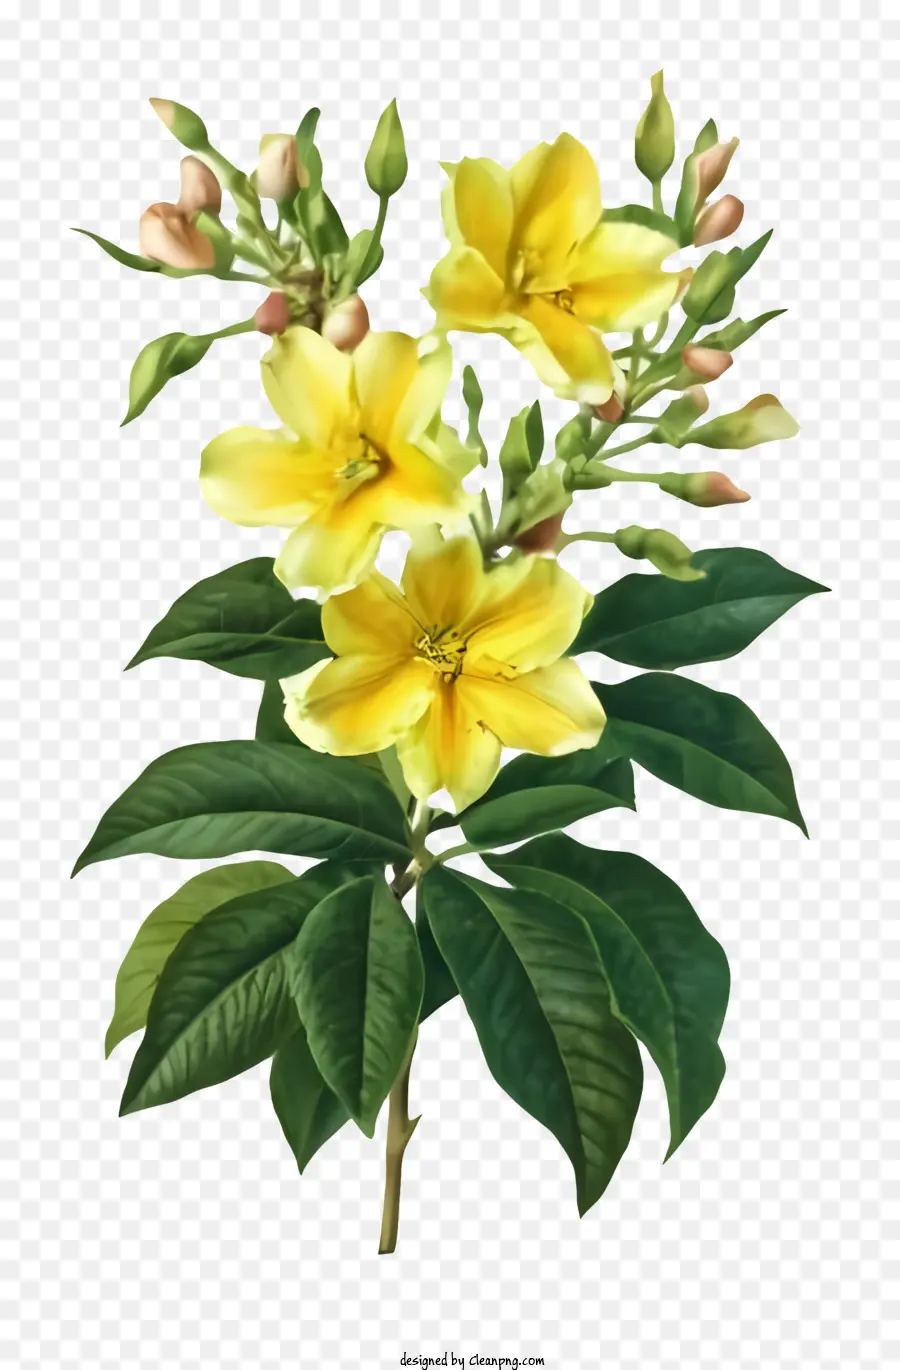 Hoạt hình hoa cánh hoa màu vàng lá xanh - Hoa màu vàng trên thân cây màu xanh lá cây